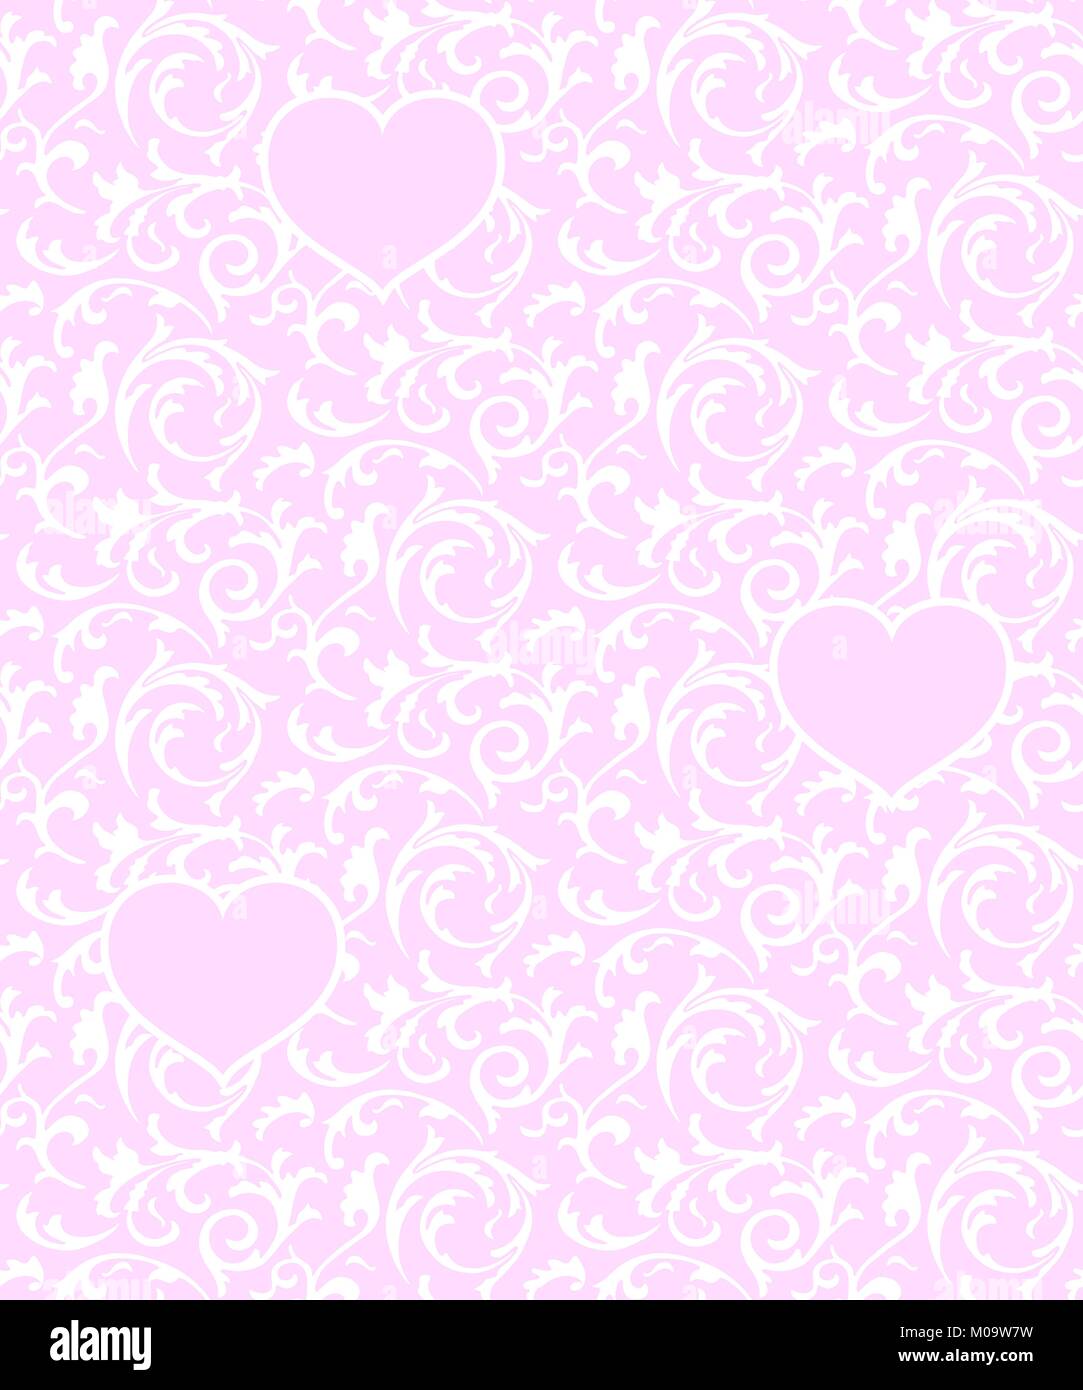 Rosa nahtlose Muster mit Herzen und weißen Blumen Element. Barocke Valentines Tag Liebe vector Hintergrund Stock Vektor